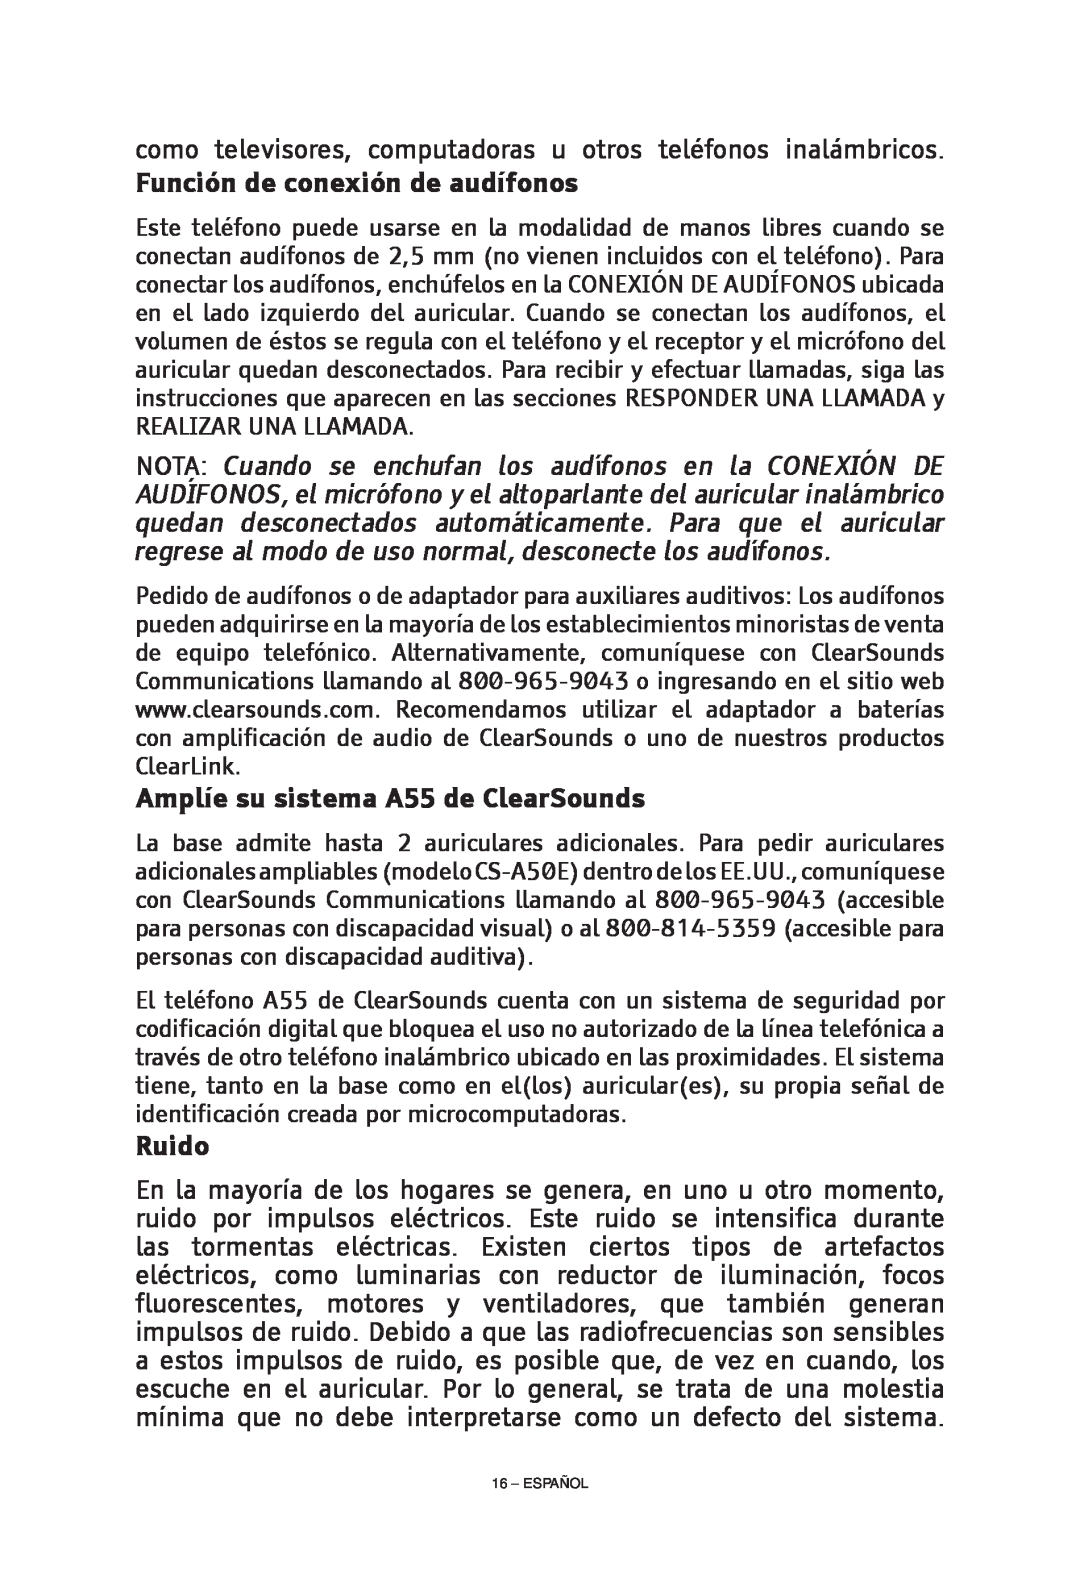 ClearSounds CS-A55 manual Función de conexión de audífonos, NOTA Cuando se enchufan los audífonos en la CONEXIÓN DE, Ruido 